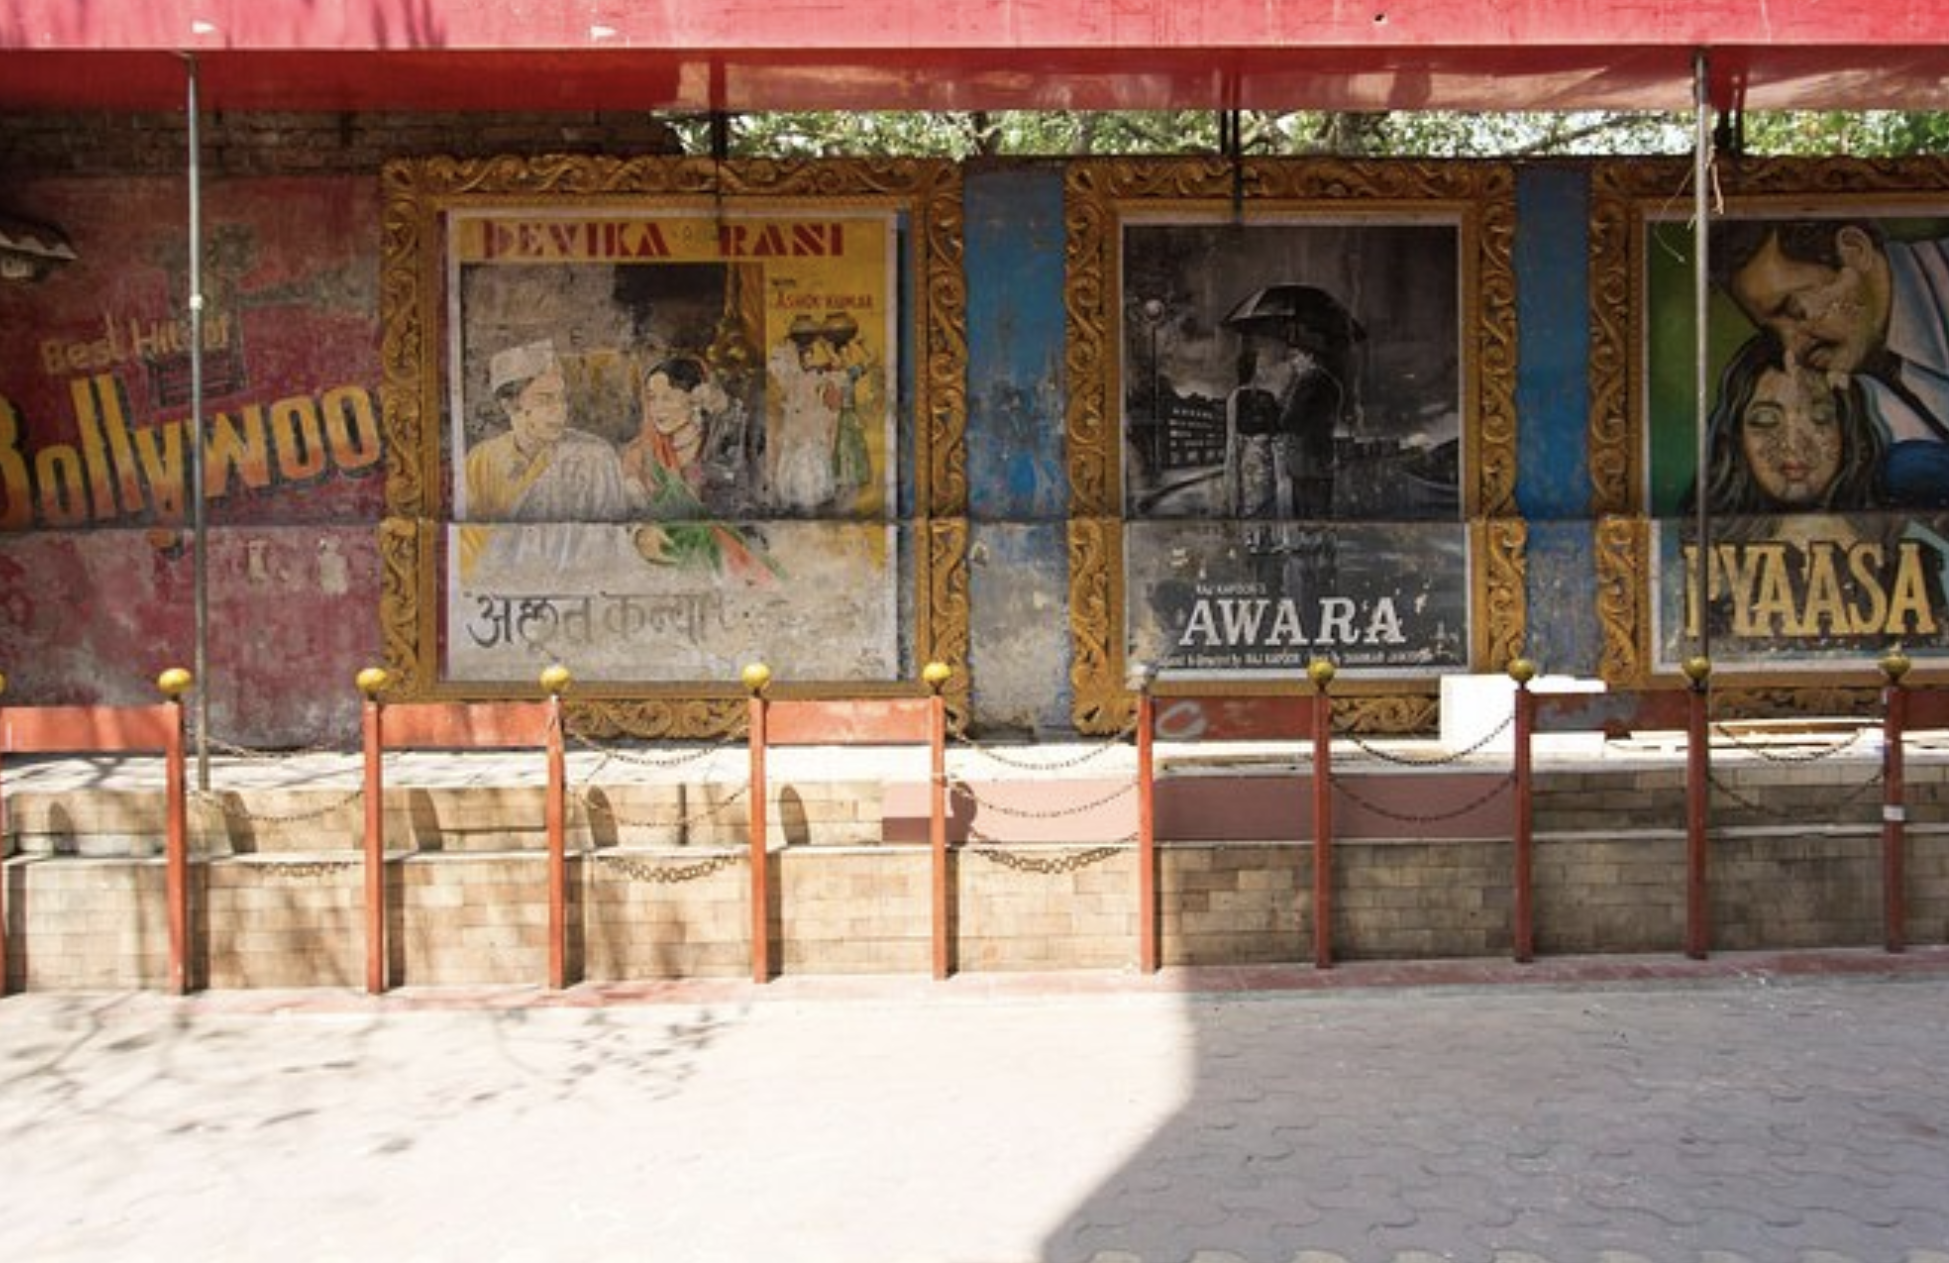 Strada comună din India. Afișe Bollywood care decorează pereții de-a lungul trotuarelor.